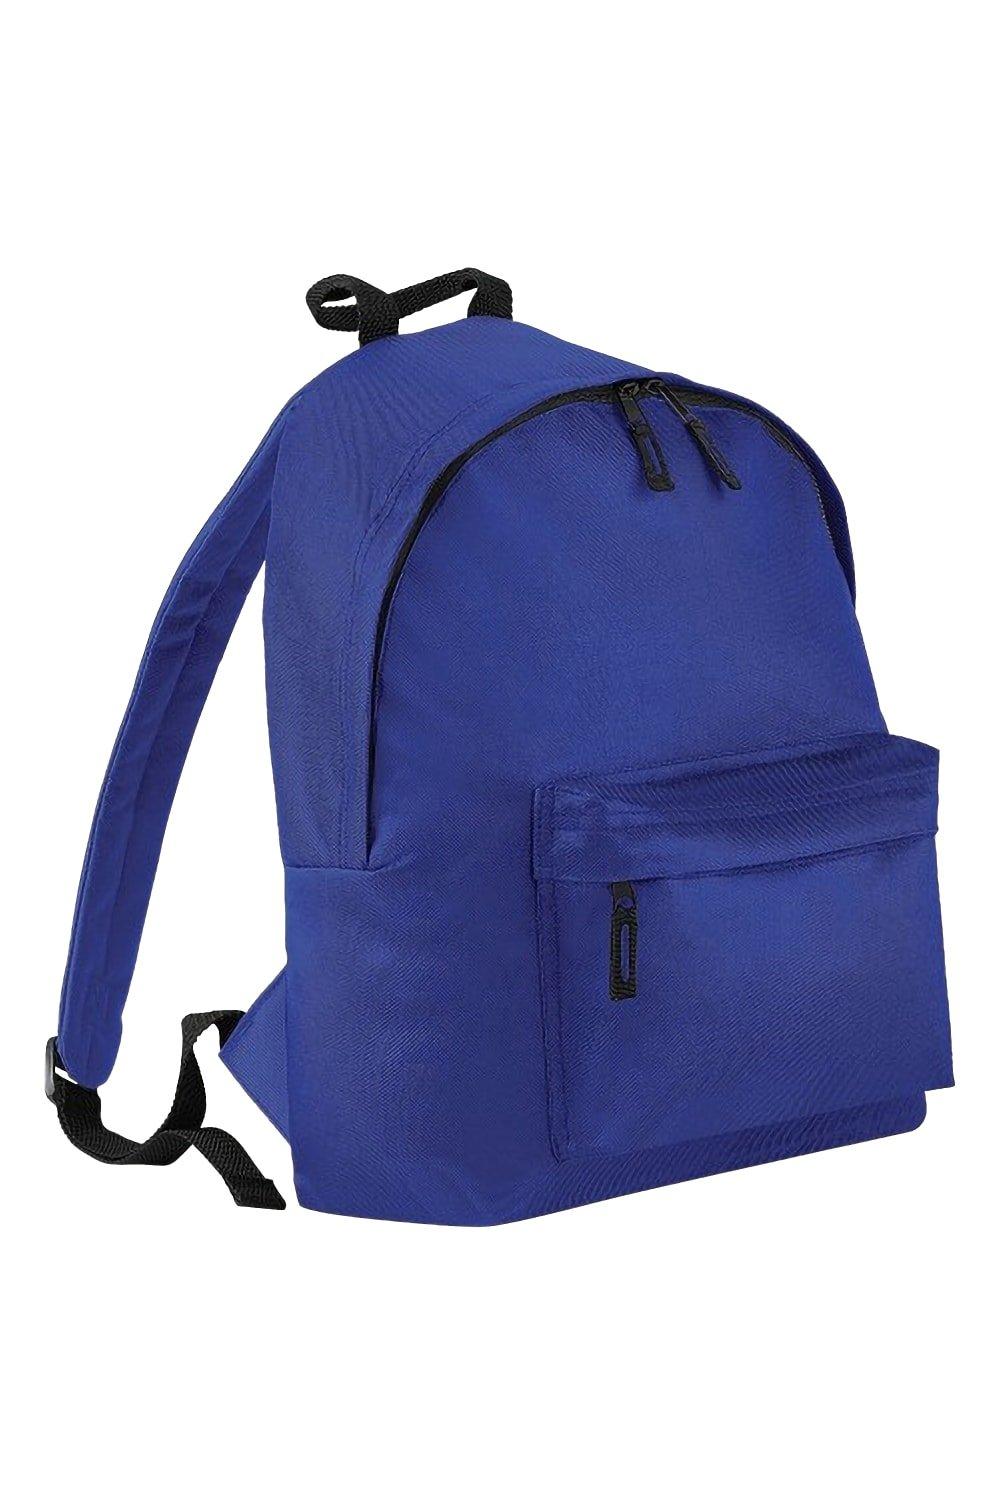 яр 19 весенний венок электронная схема Модный рюкзак / рюкзак (14 литров) Bagbase, синий